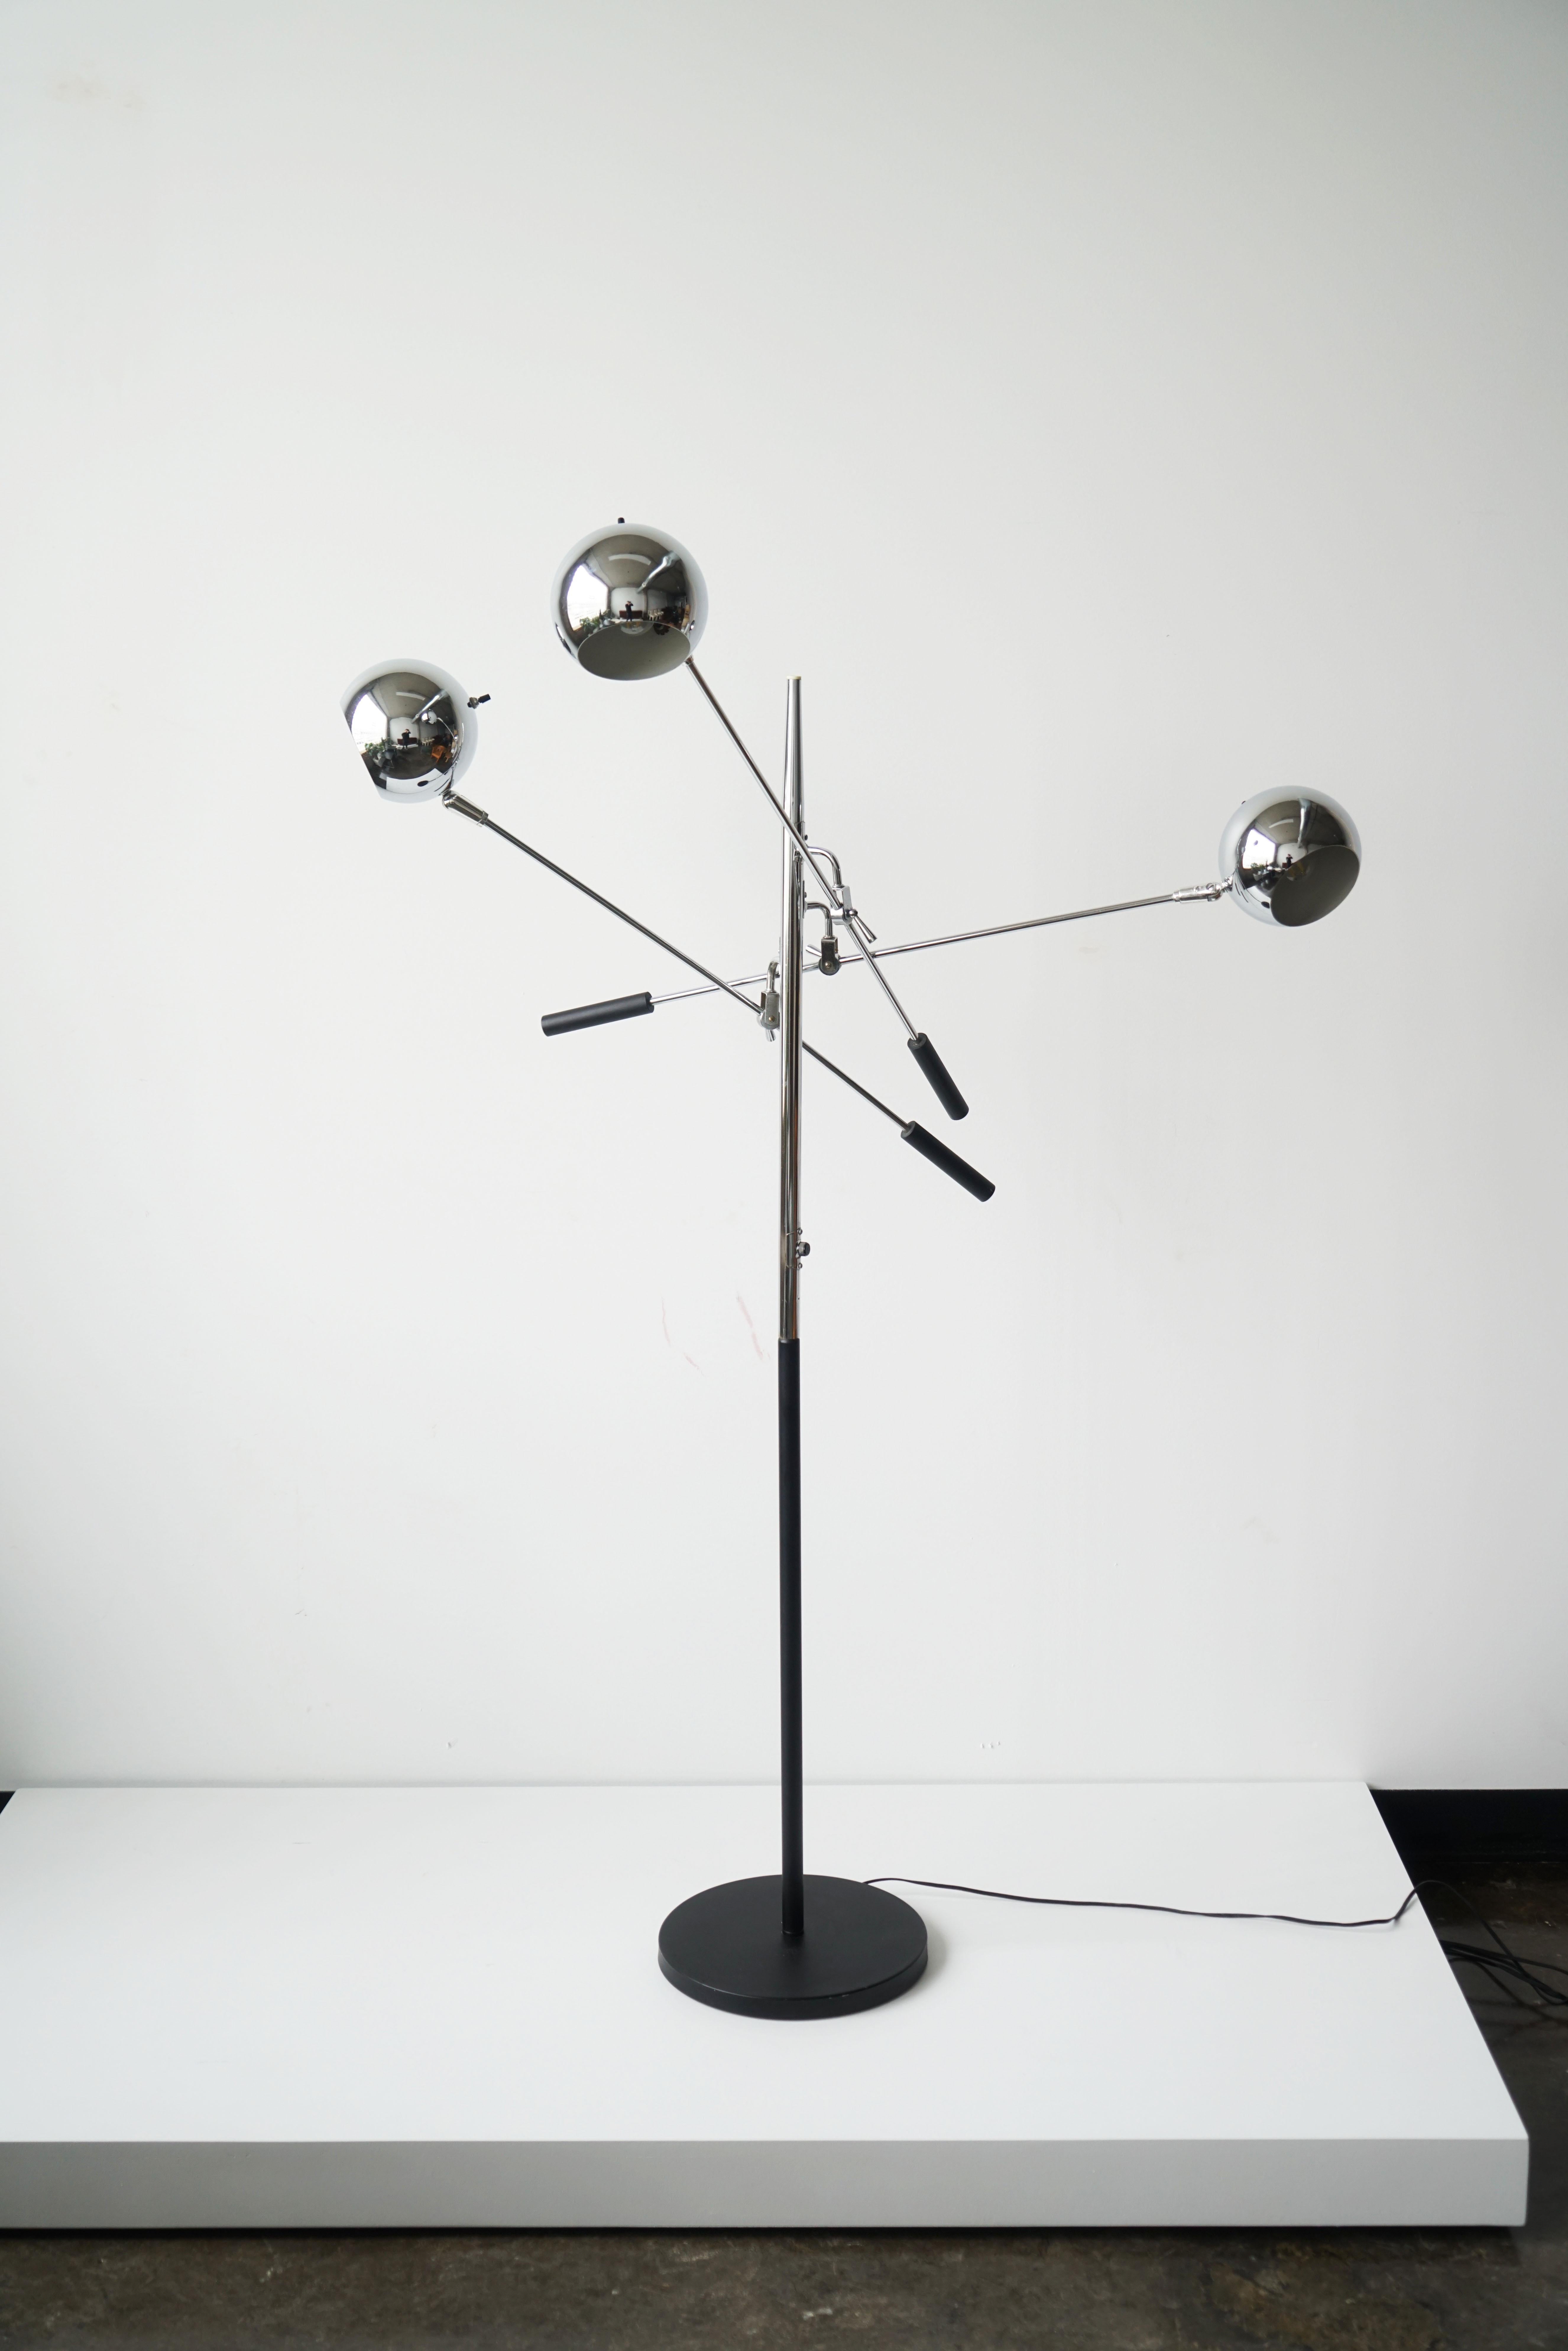 Lampadaire vintage à 3 bras conçu par Robert Sonneman.
vers les années 1970. 

Cette lampe comporte trois têtes lumineuses chromées réglables qui pivotent sur des bras de levier équilibrés. Une lampe vraiment classique et bien faite. 

Testé et